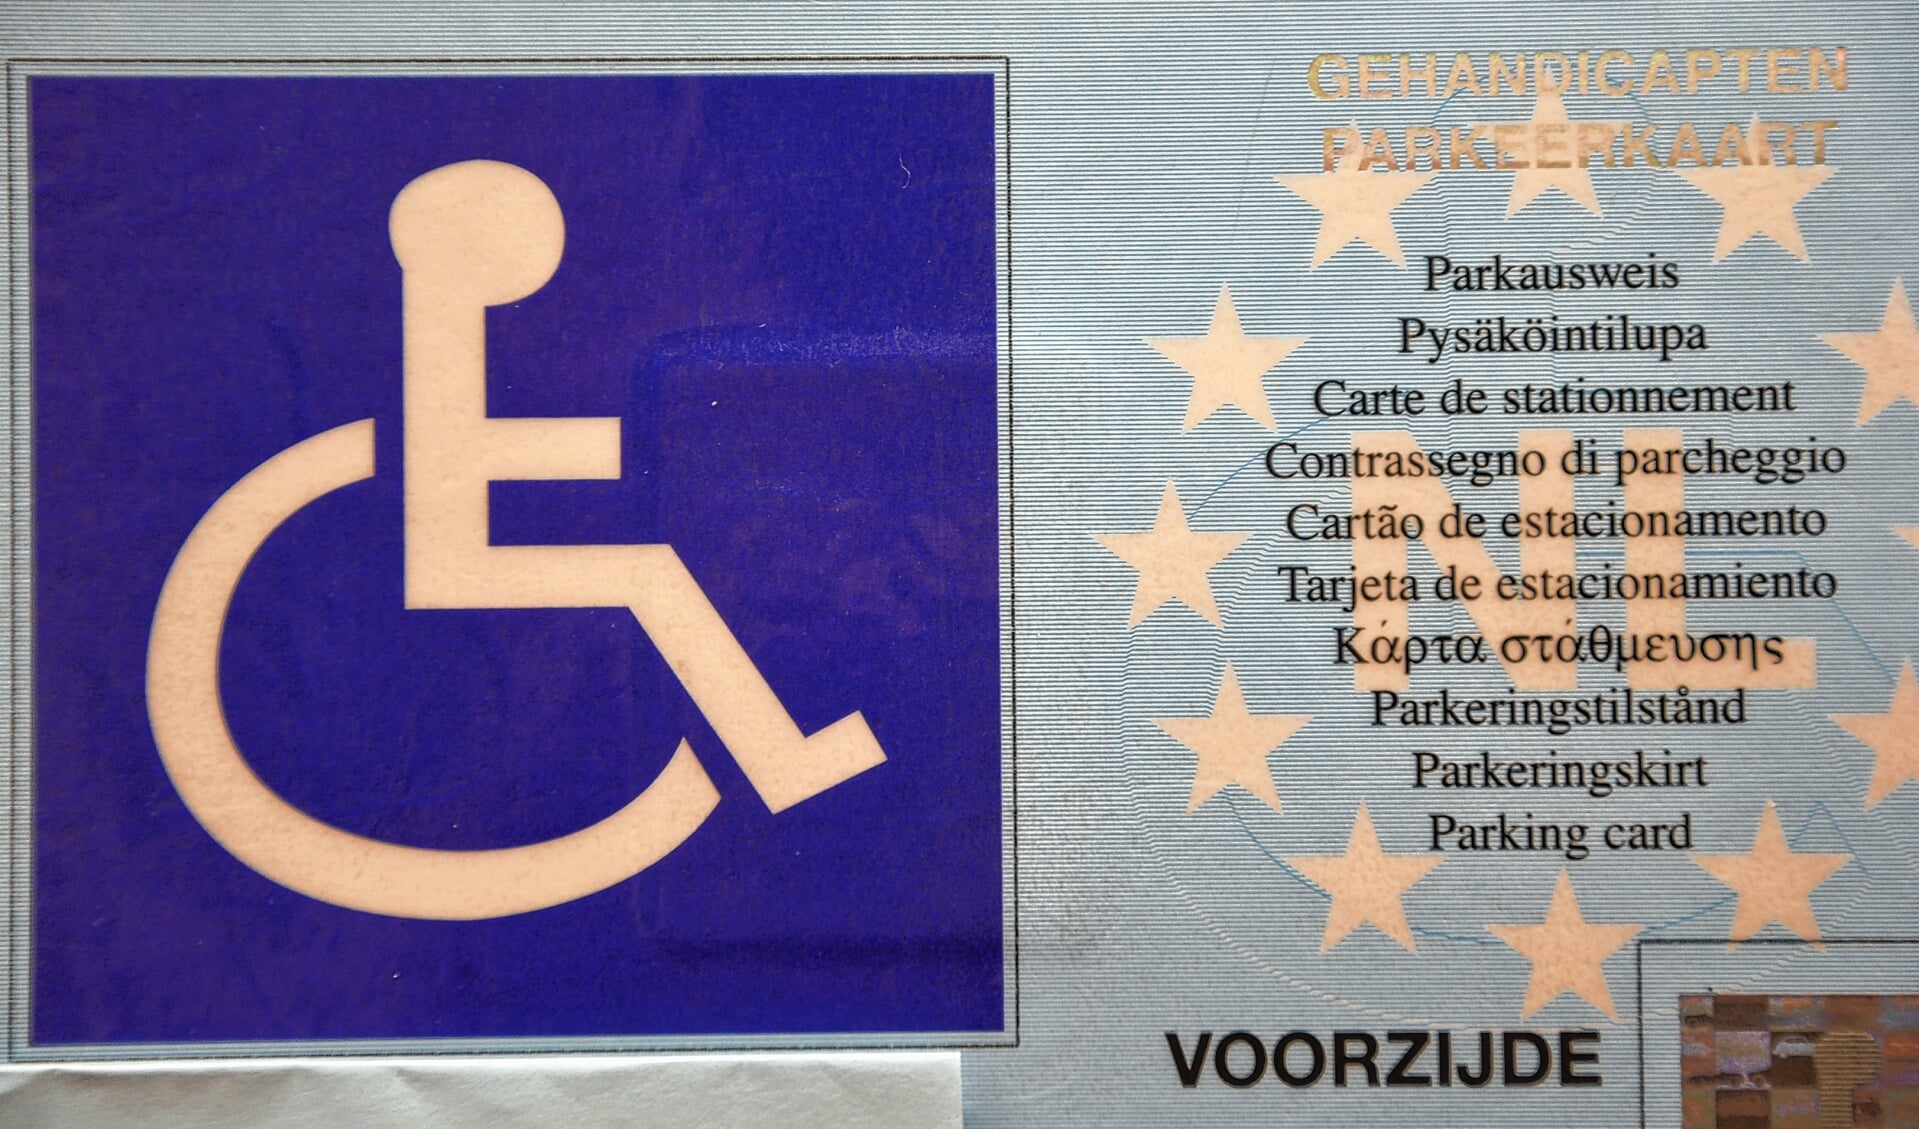 Inwoners met een laag inkomen kunnen direct kwijtschelding krijgen voor bijvoorbeeld een een gehandicapten parkeerkaart (archieffoto).